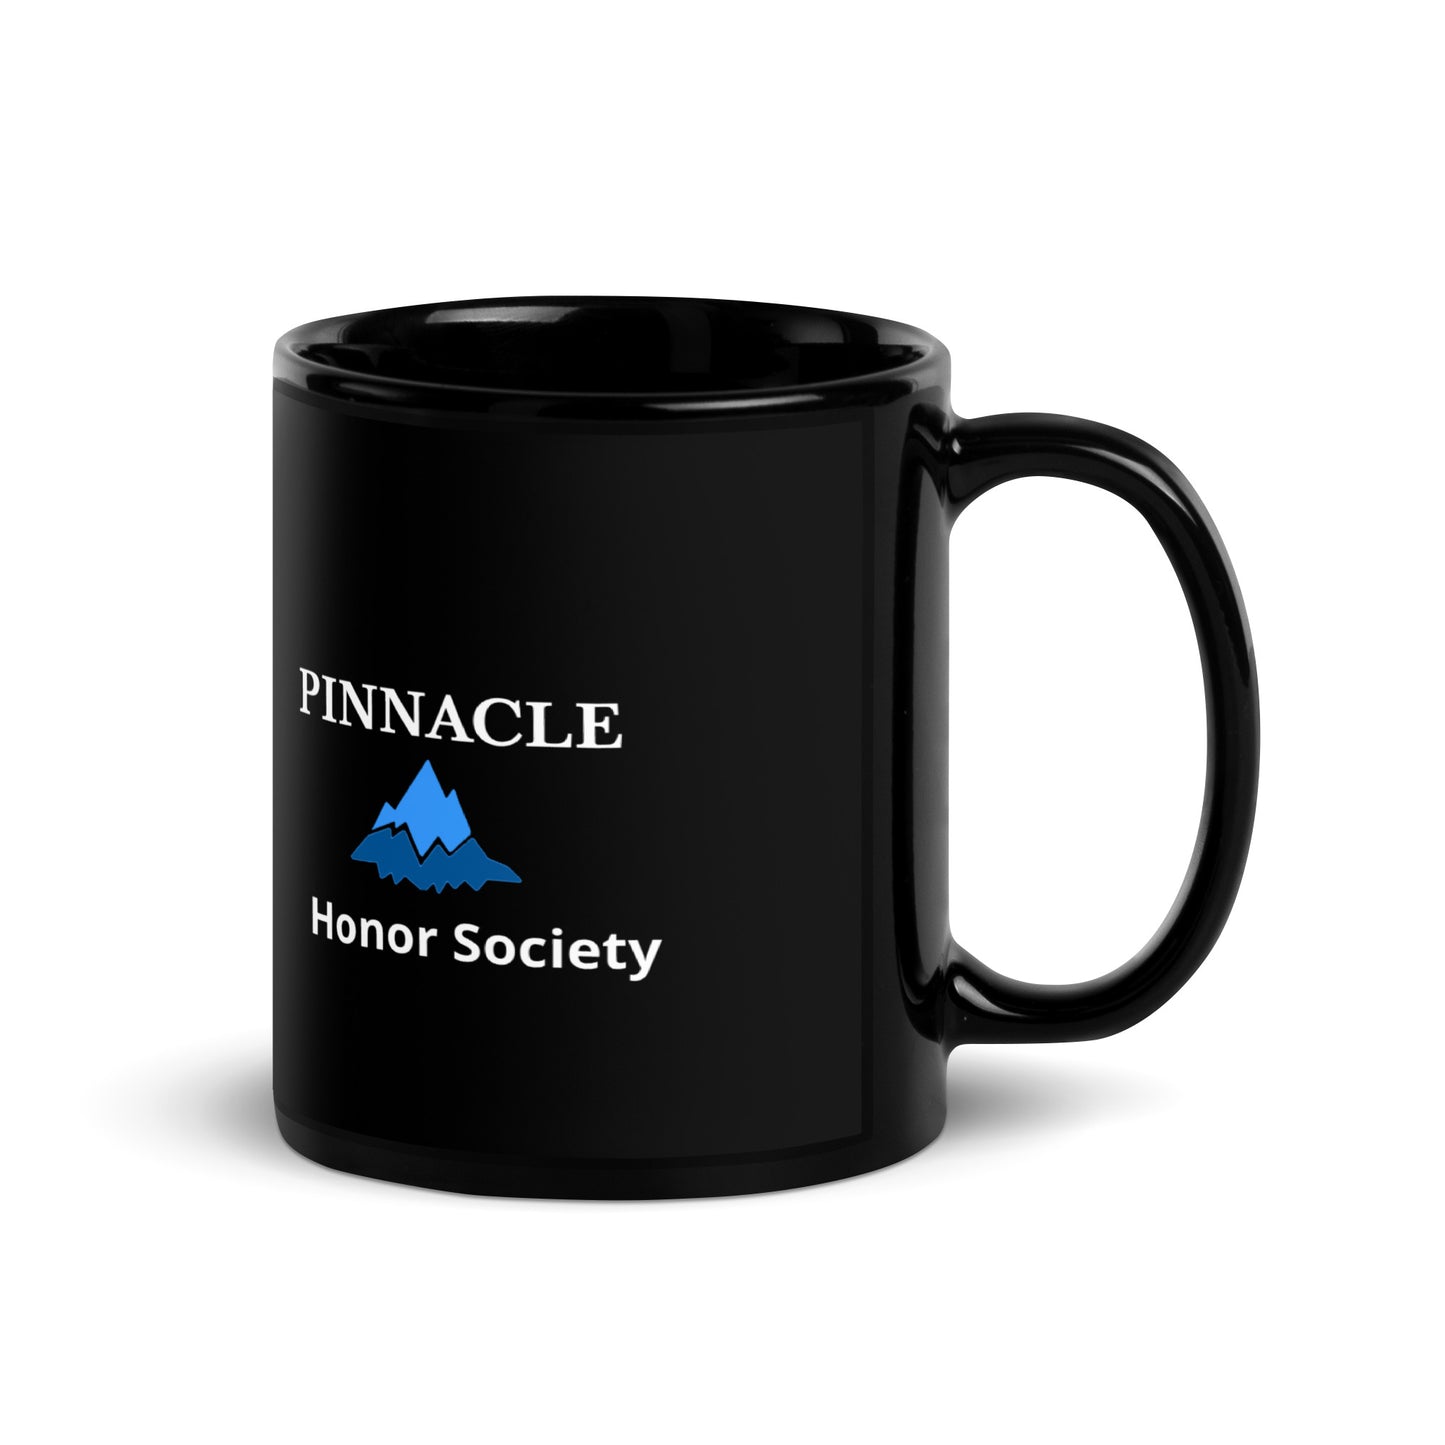 Pinnacle Honor Society Mug